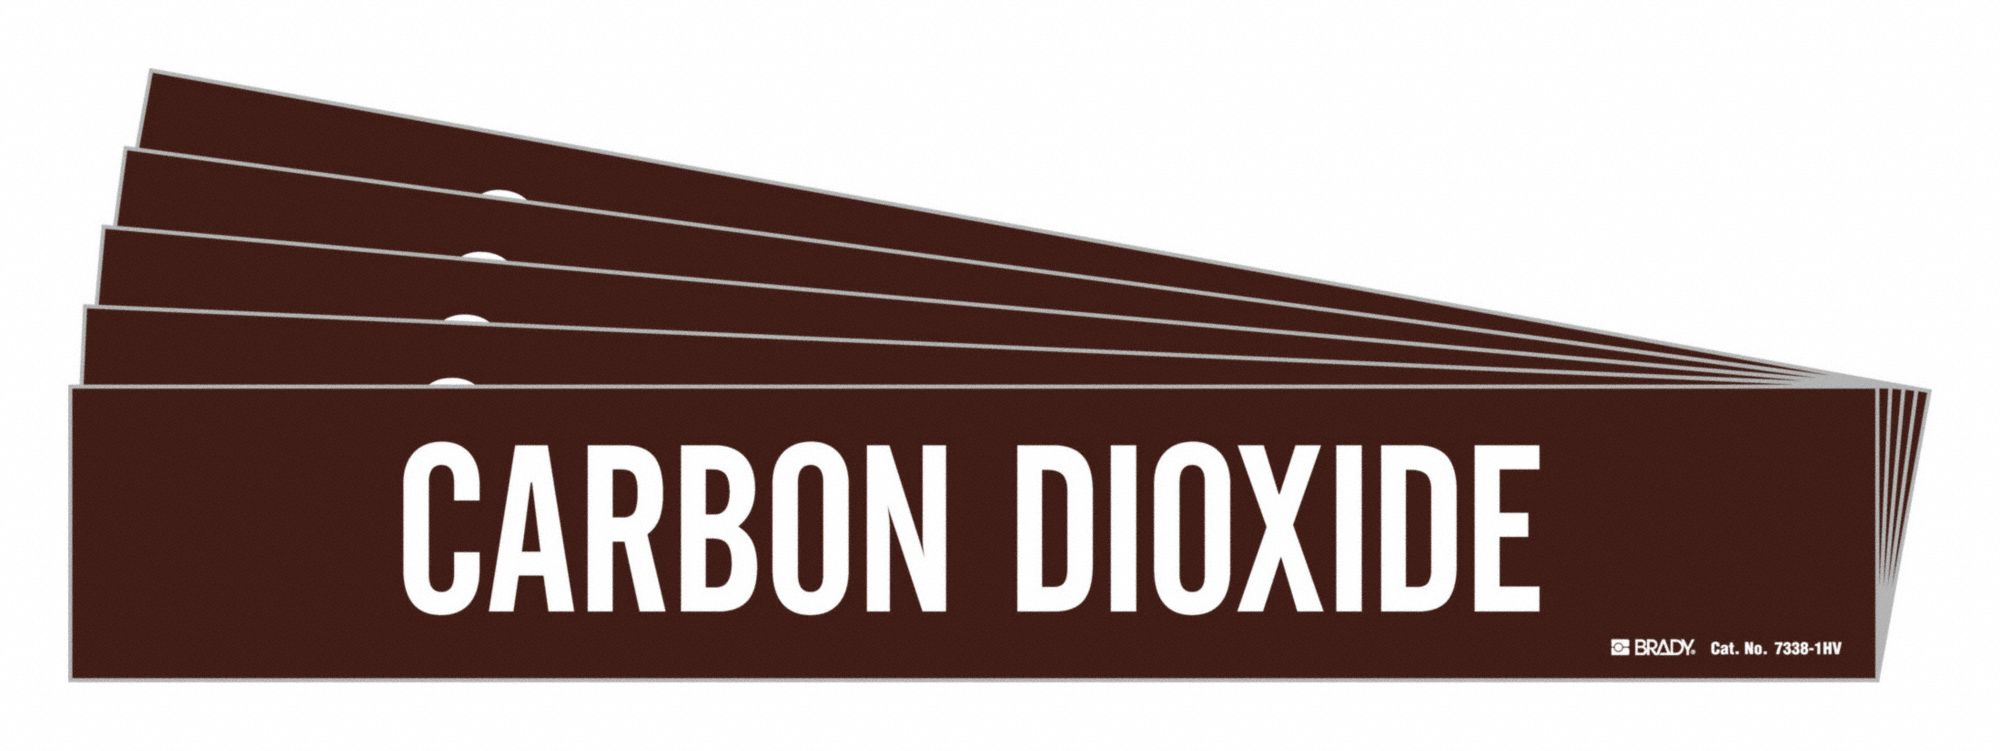 Marcador de tuberías, leyenda: Dióxido de carbono, sistema Iiar Abreviatura no aplicable